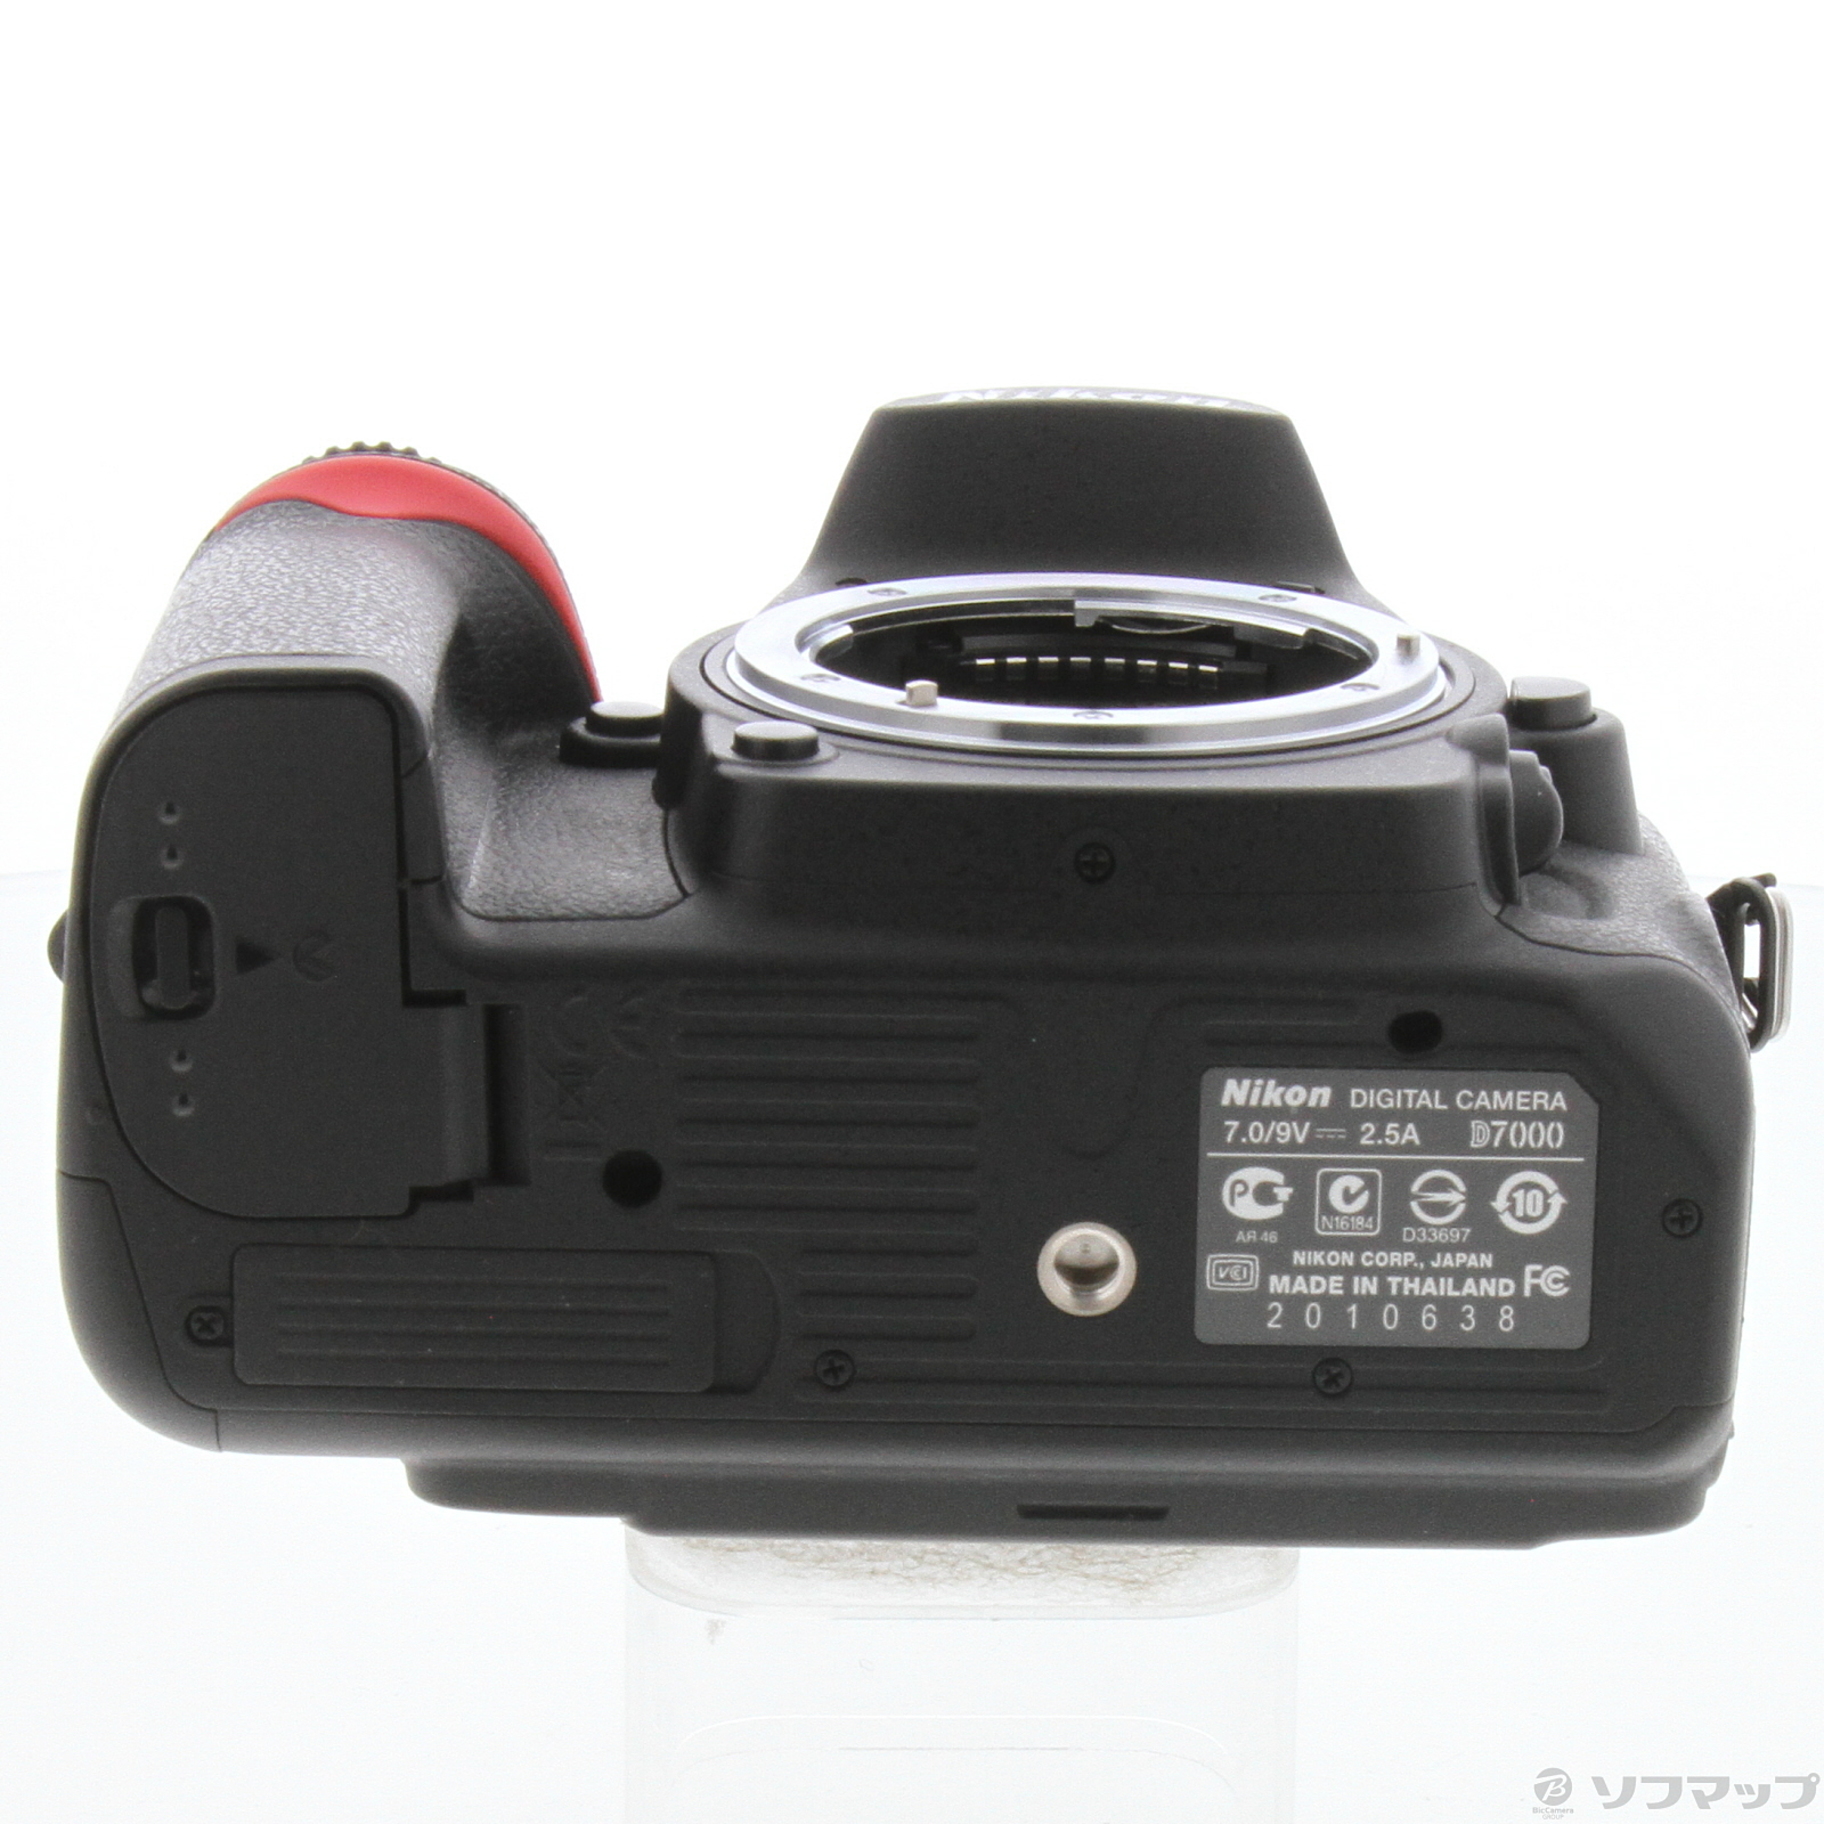 【高性能】Nikon ニコン D7000 標準/超望遠 ダブルレンズ オマケ多数